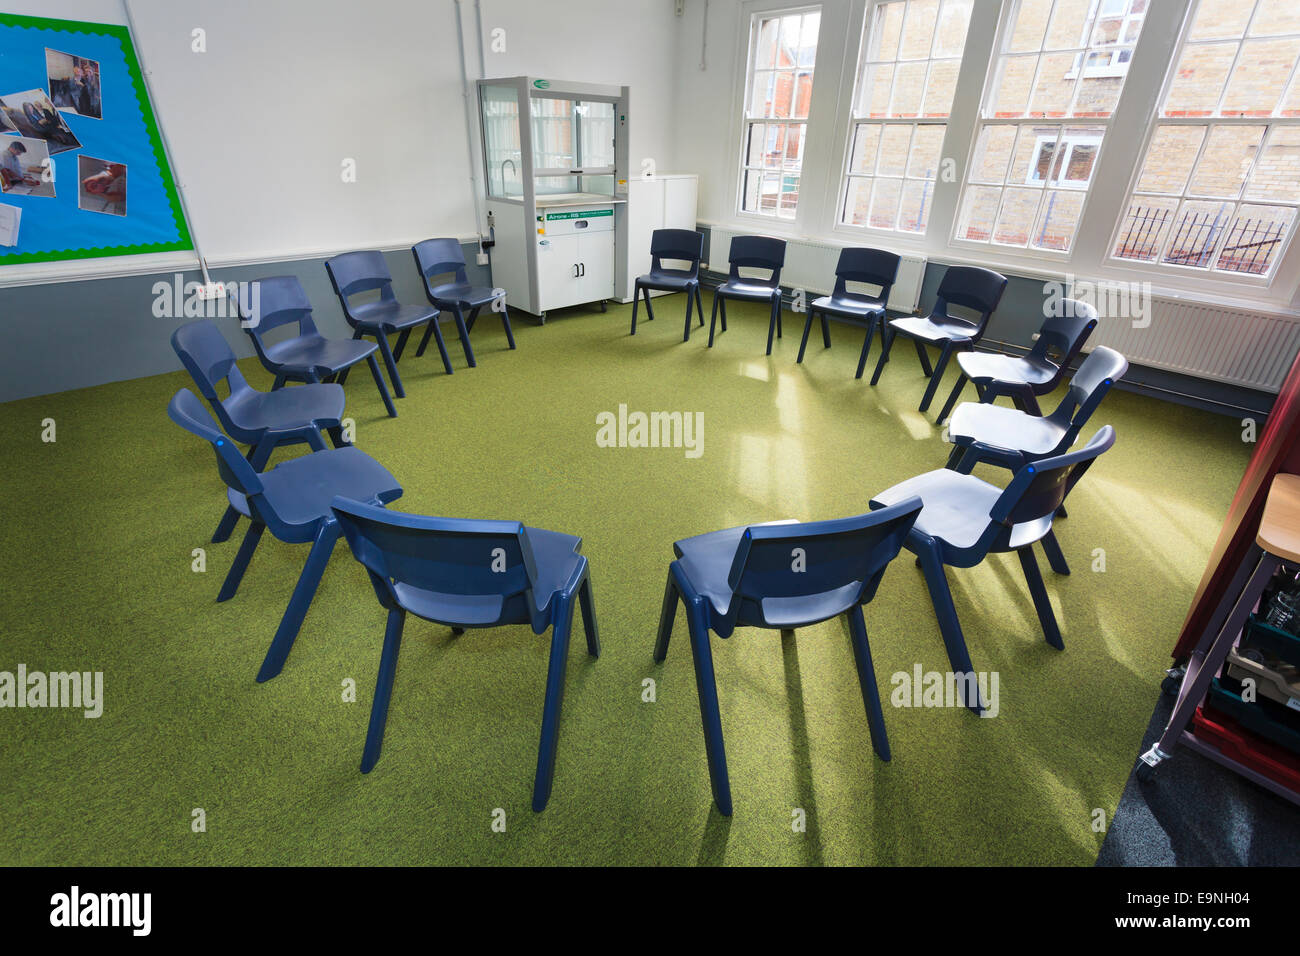 Des chaises disposées en cercle dans une salle de classe de l'école Studio Île de Wight Banque D'Images